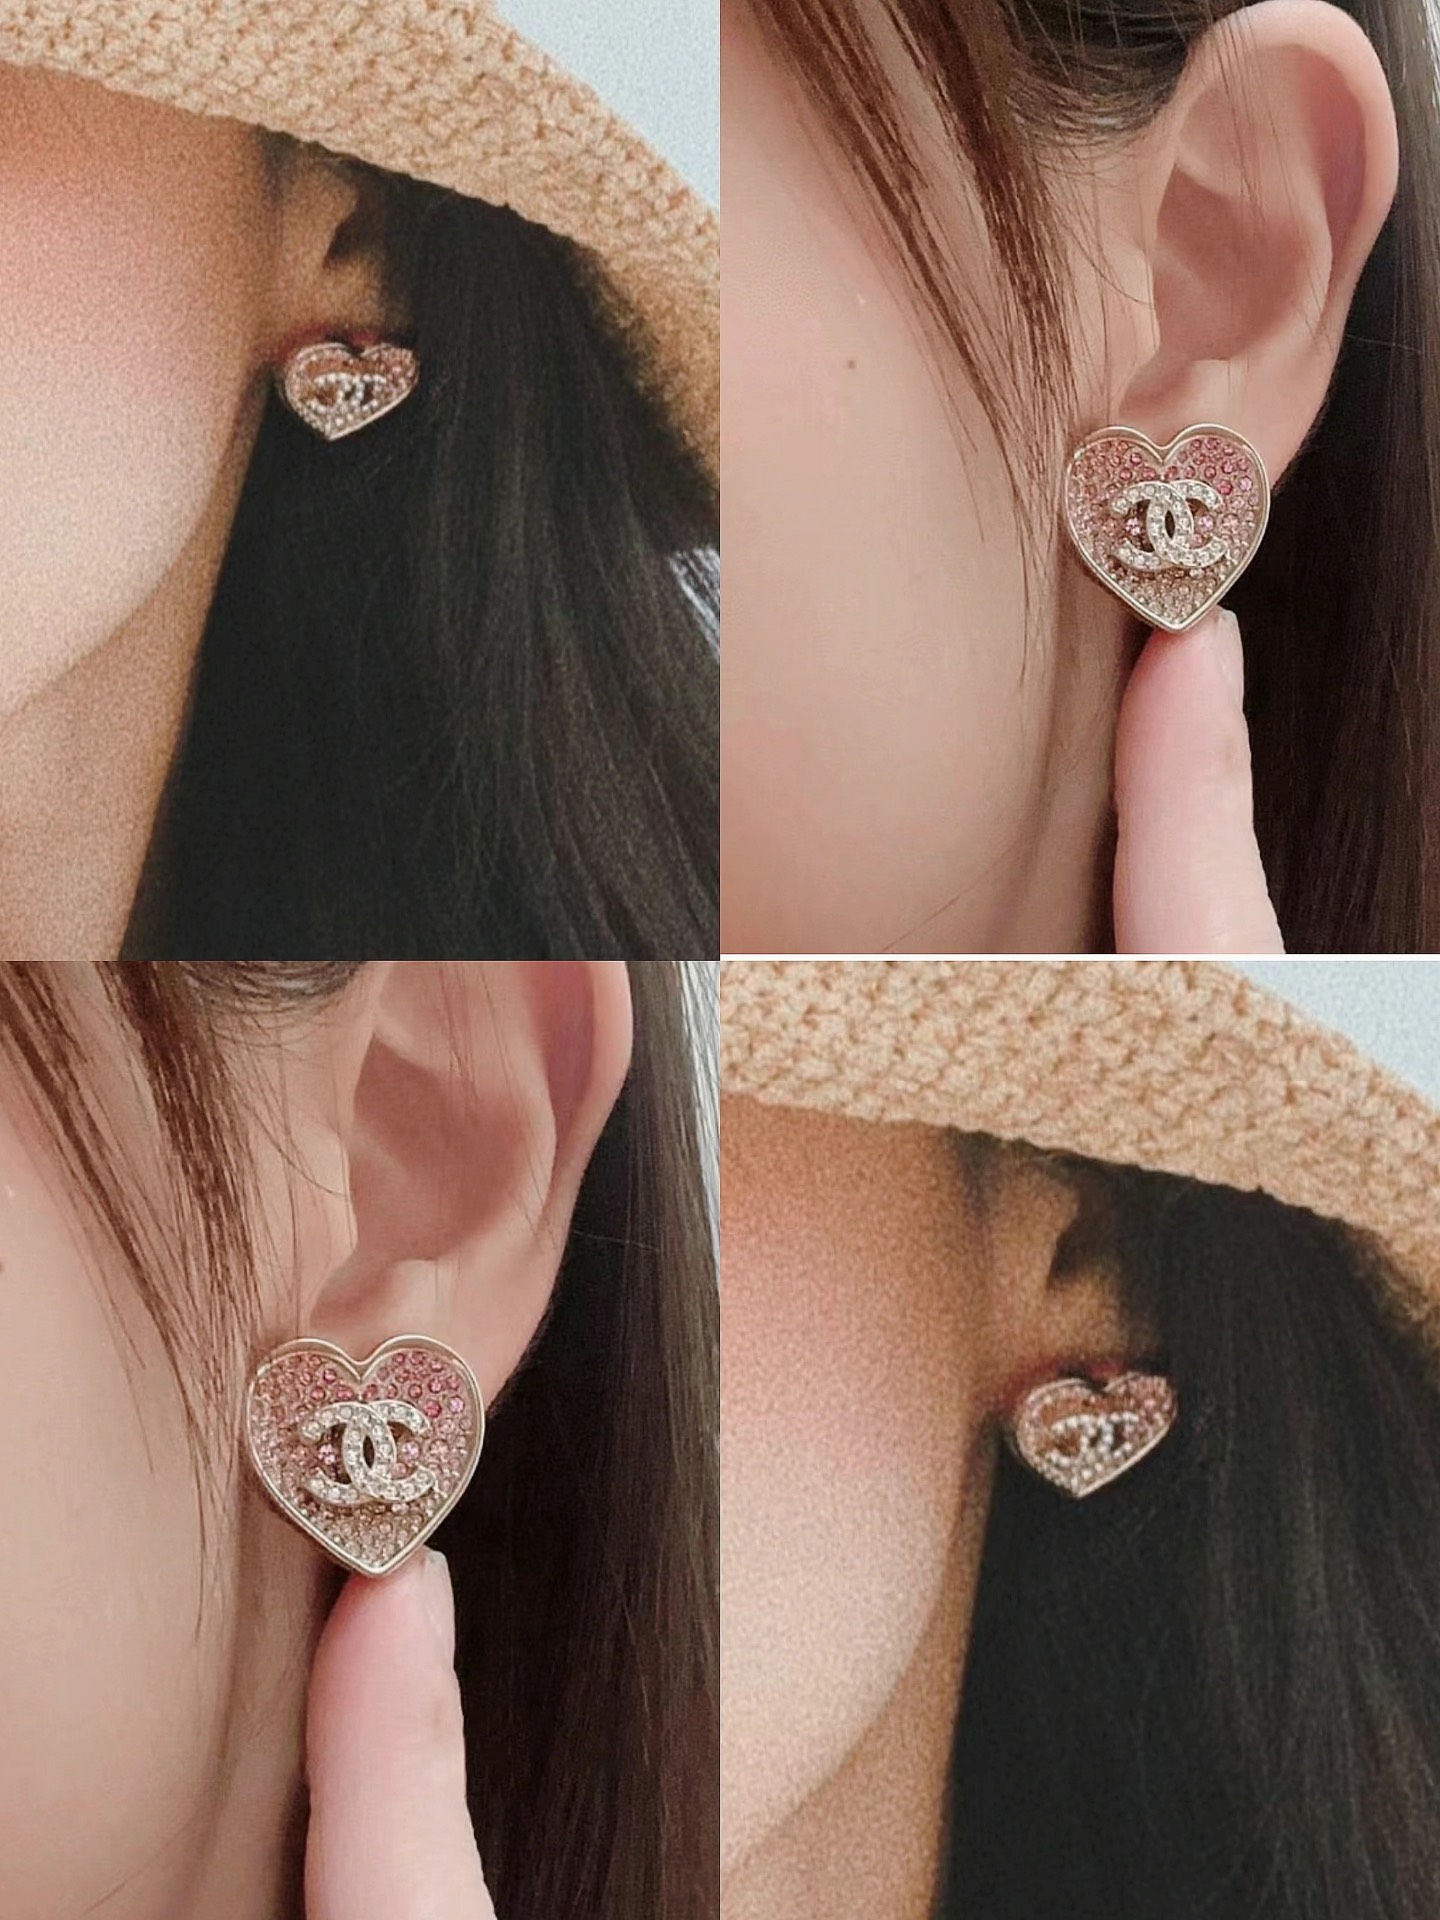 A920 Chanel earrings